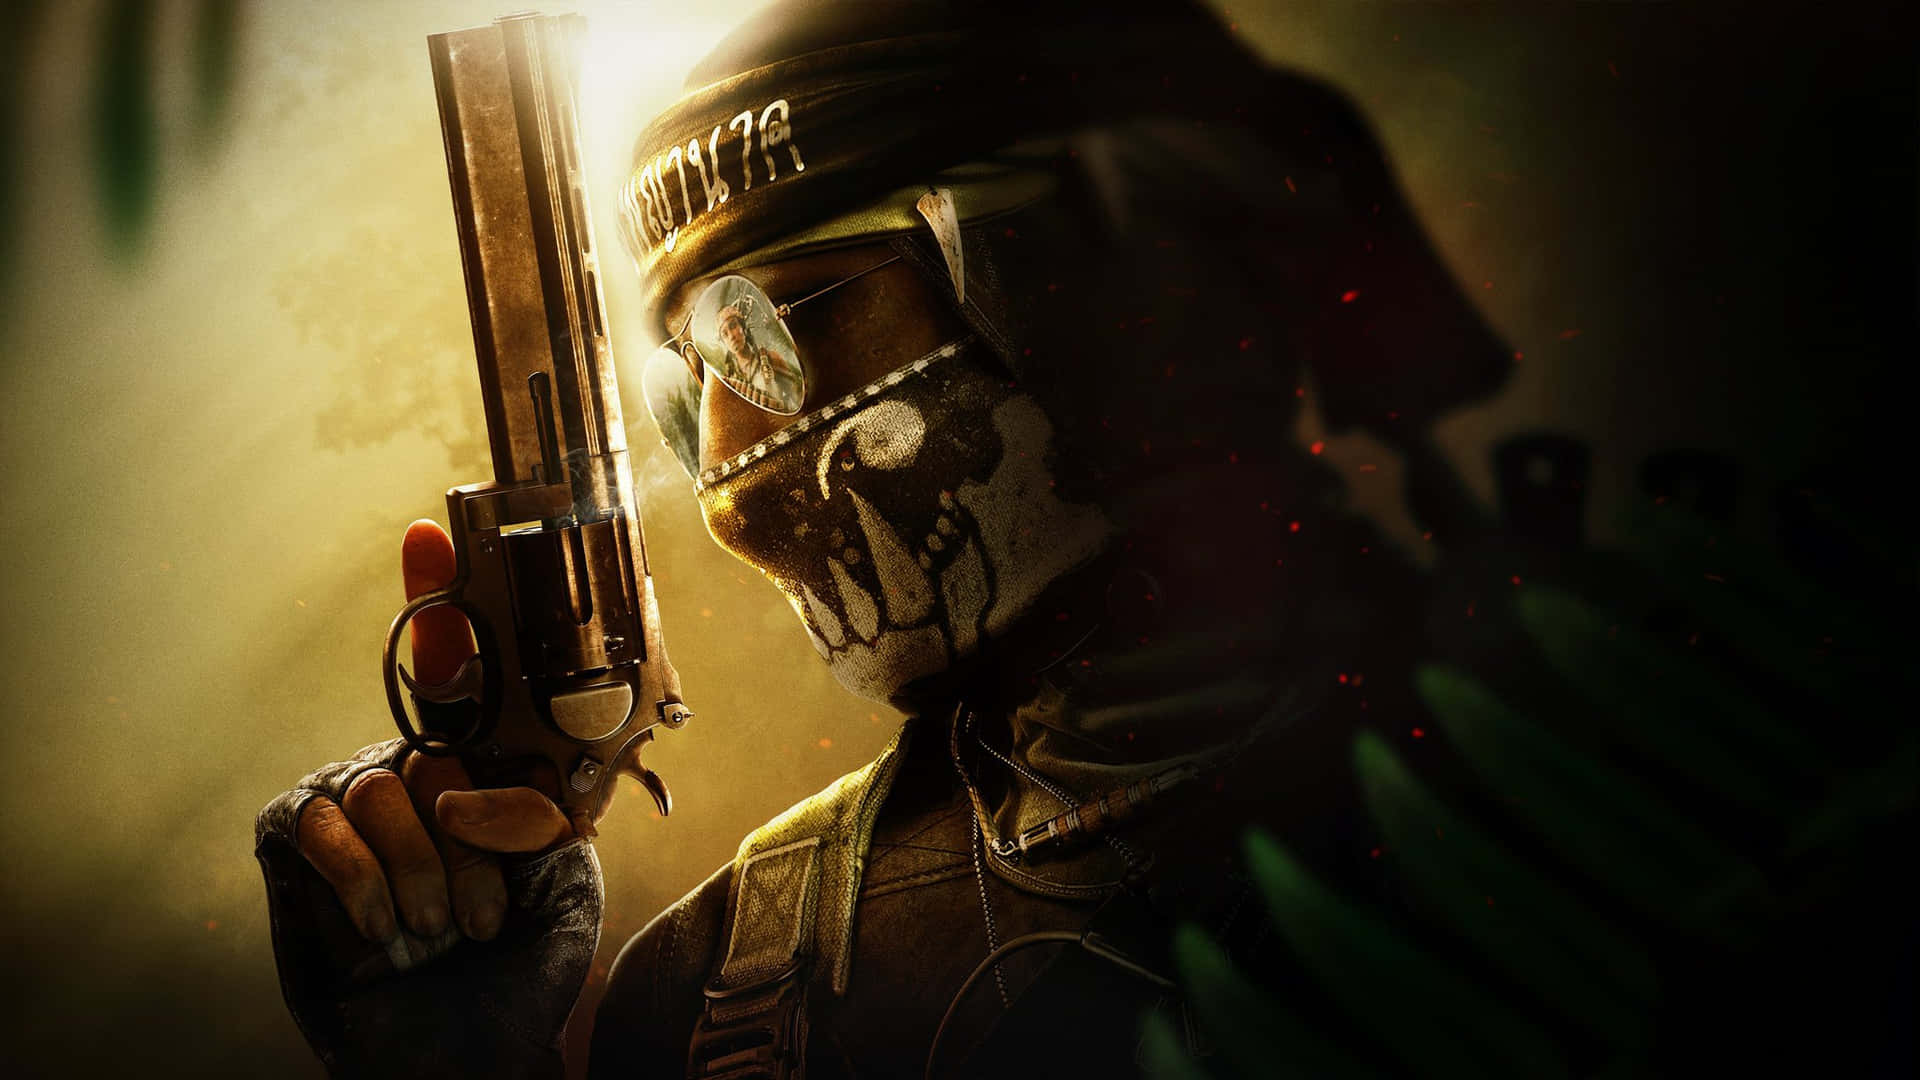 Scoprii Segreti Della Guerra Fredda In Call Of Duty Black Ops Cold War.